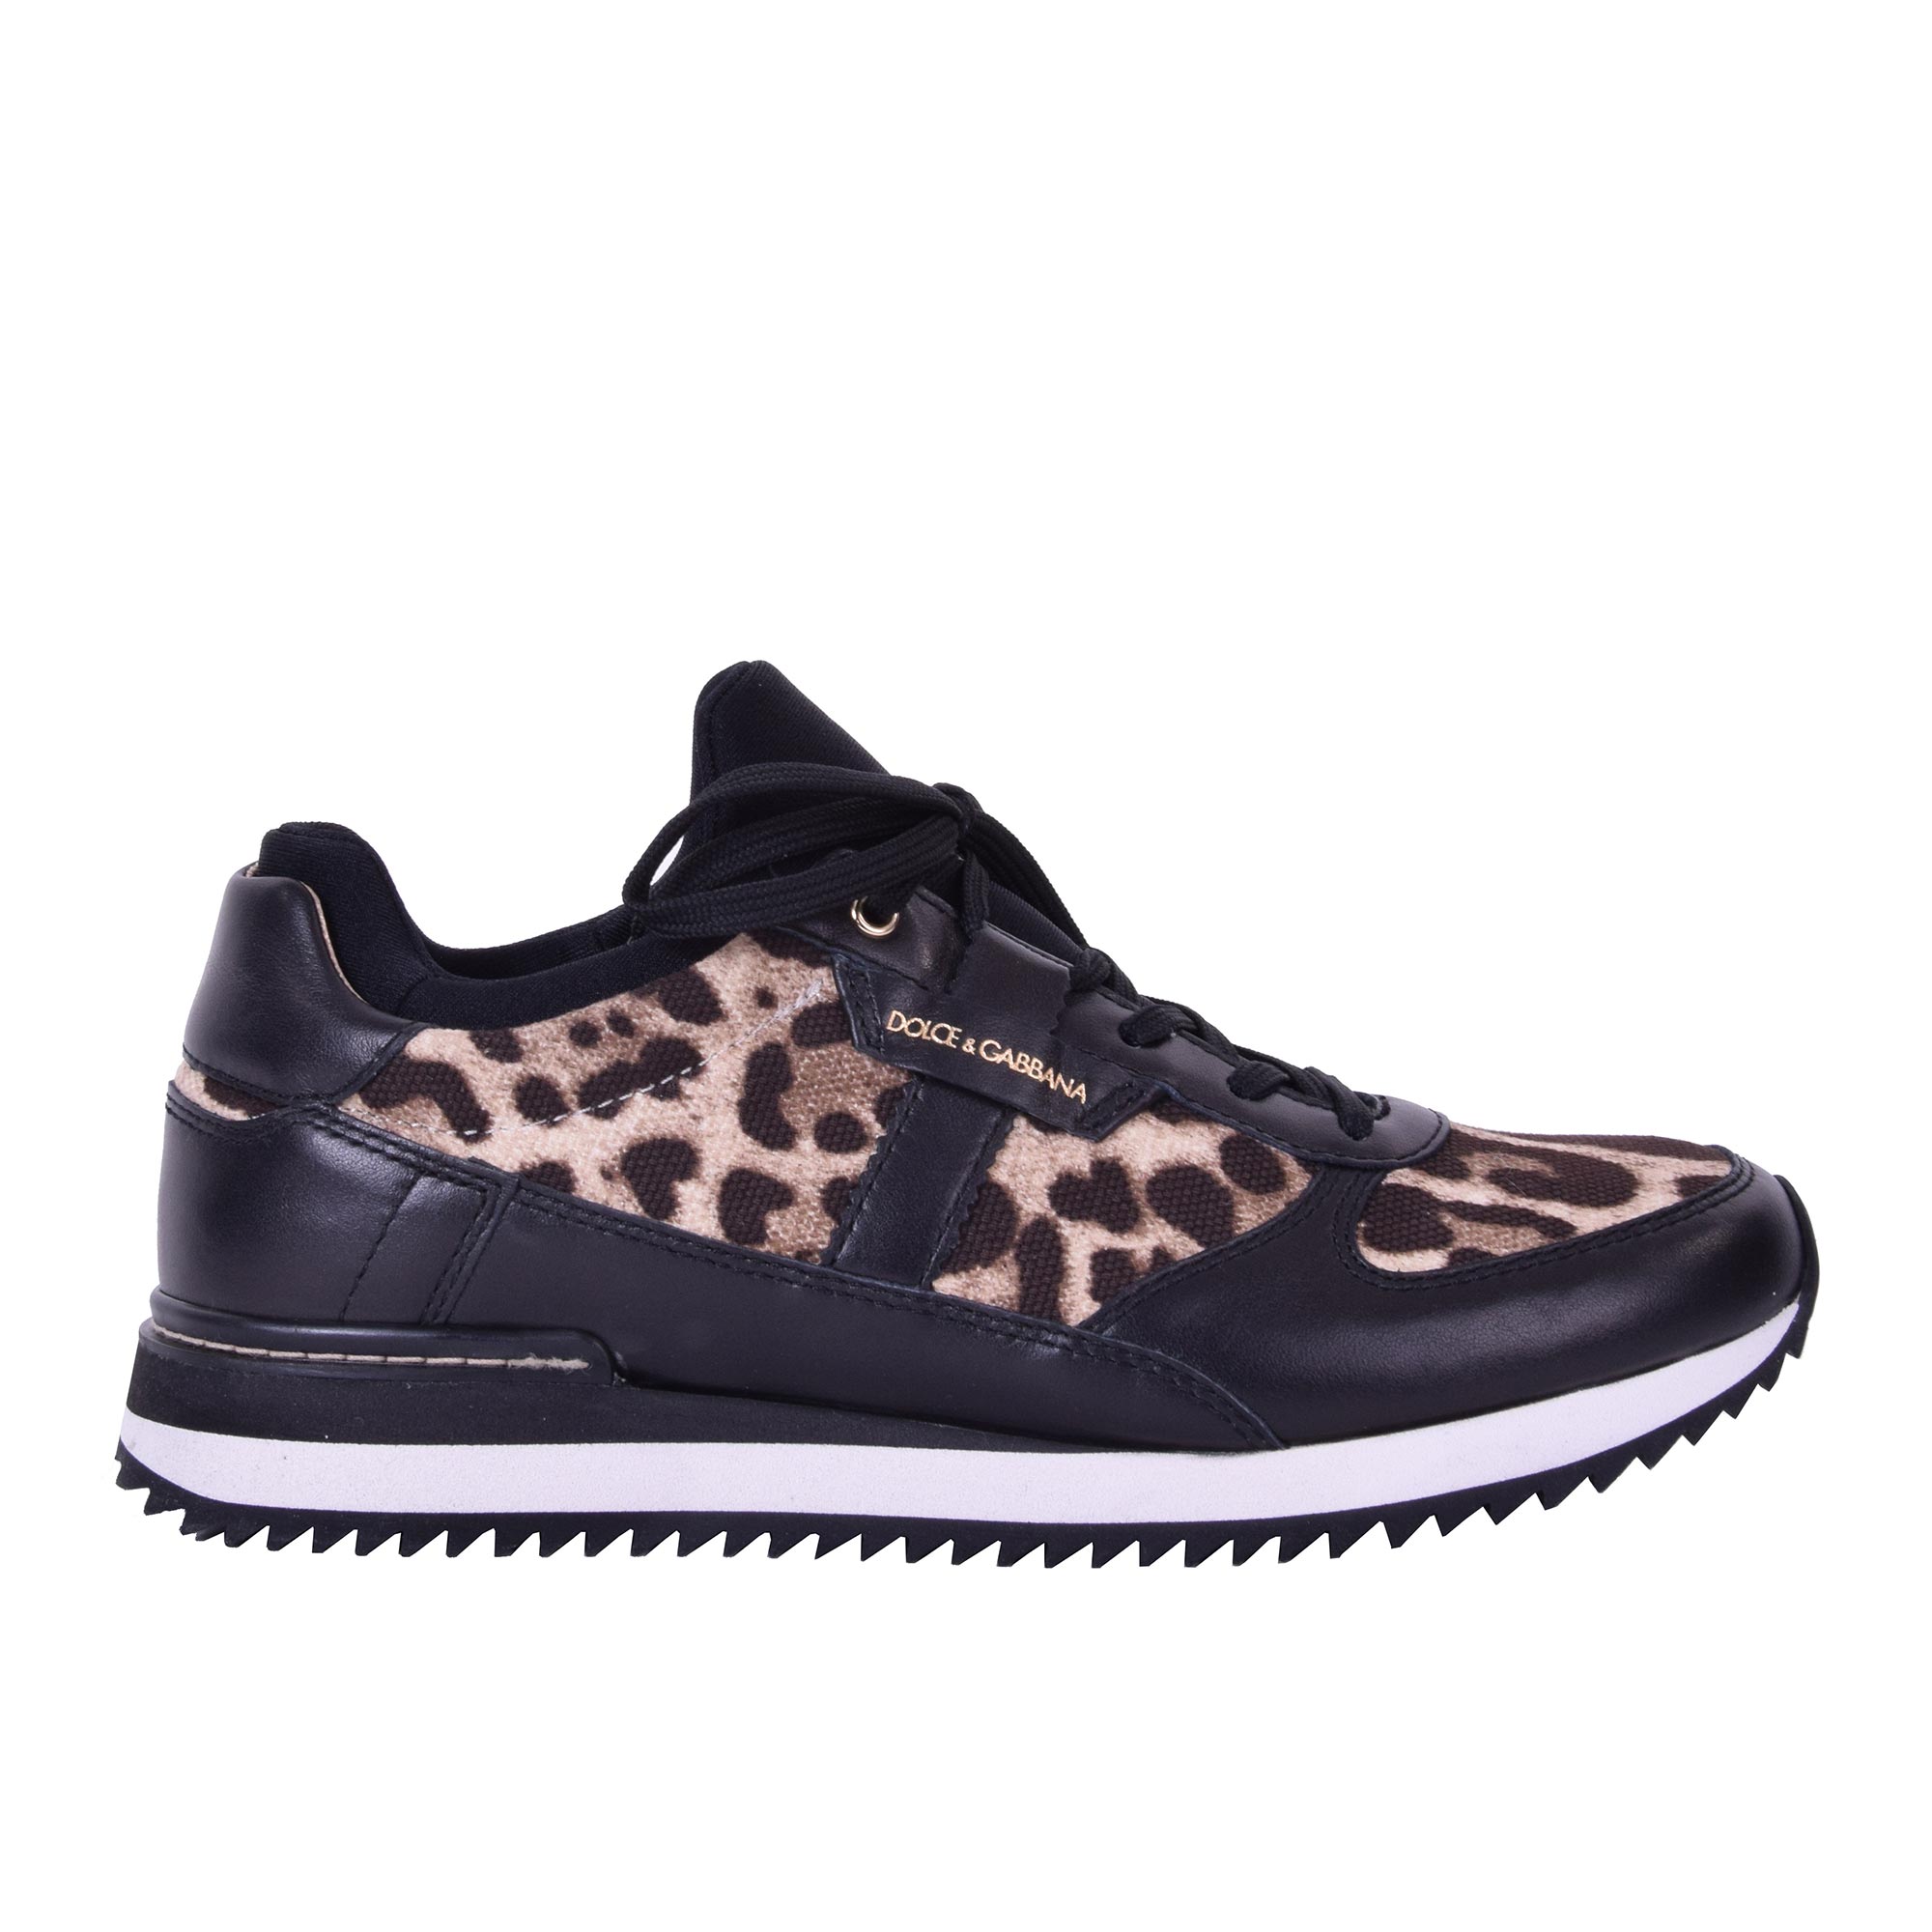 Gabbana Leopard Printed Sneaker NIGERIA 